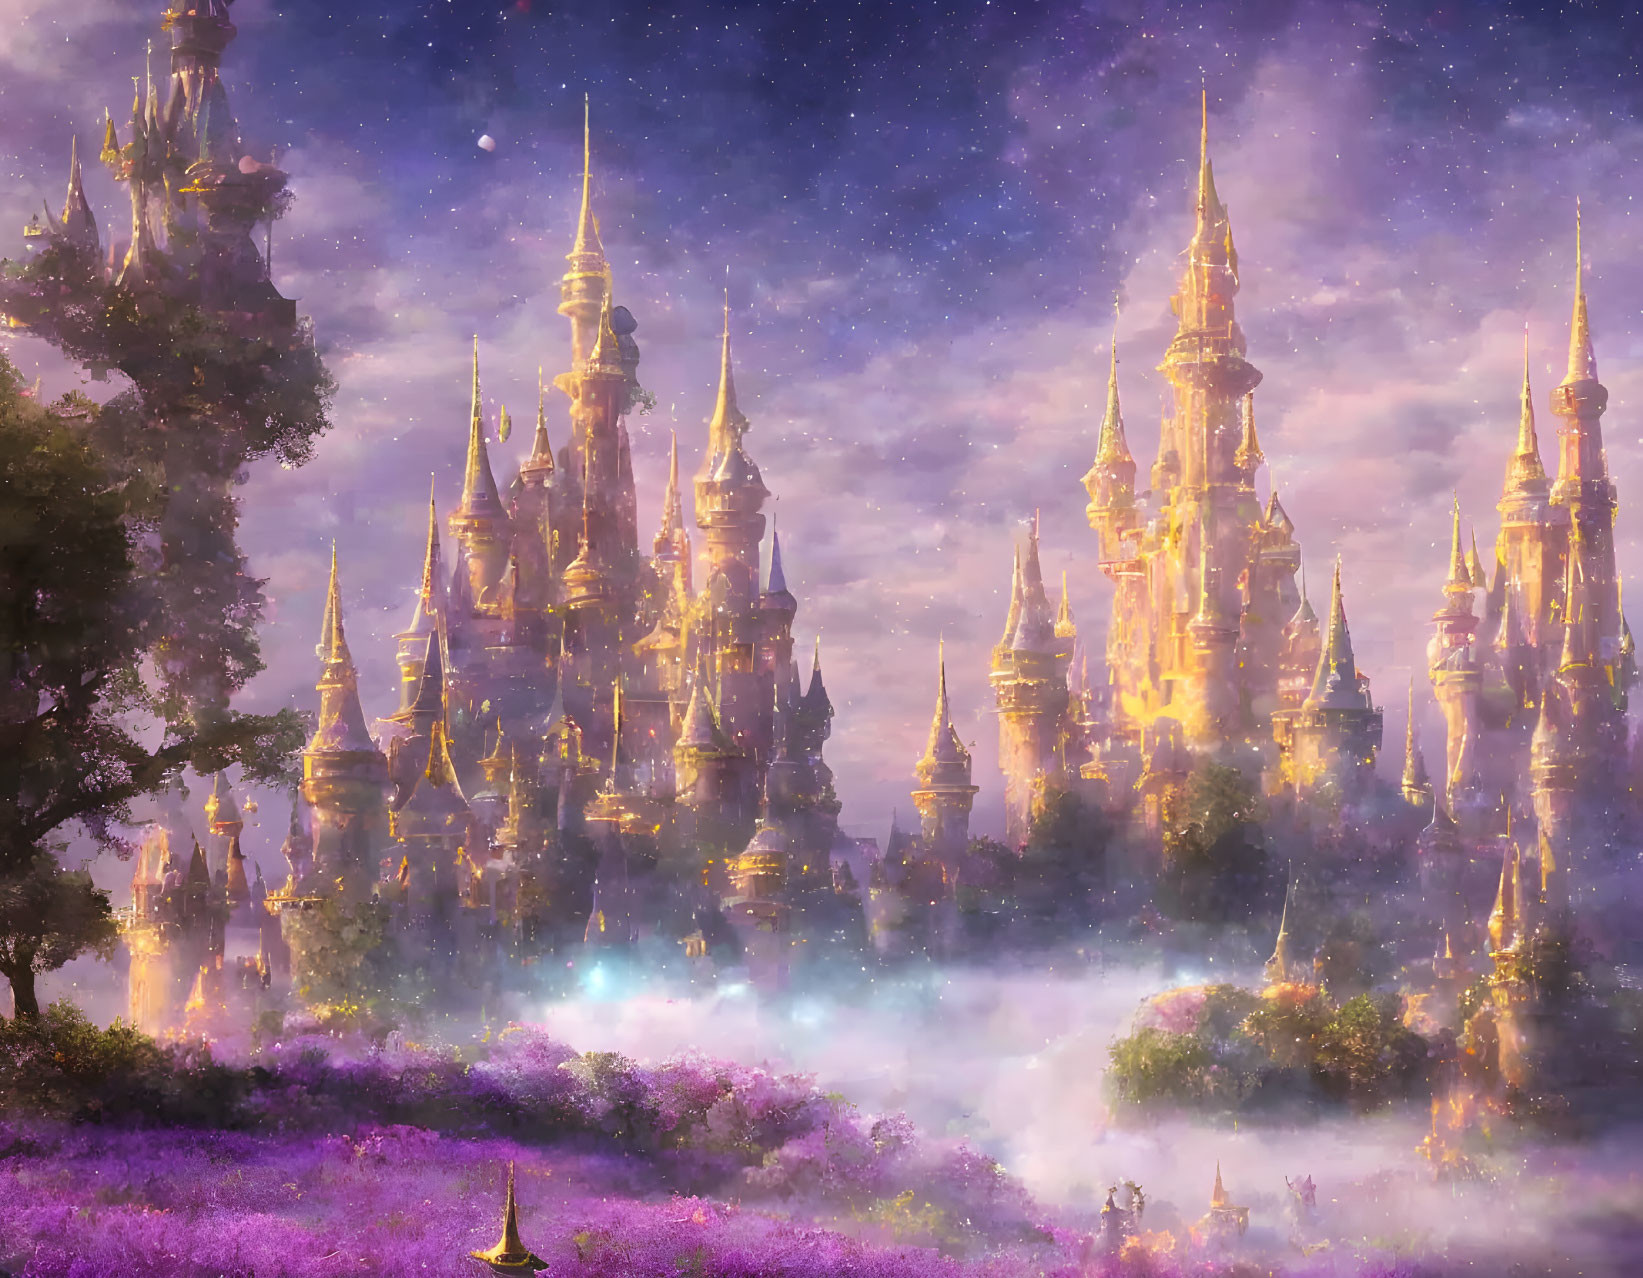 Misty starry sky over golden spires in lavender landscape